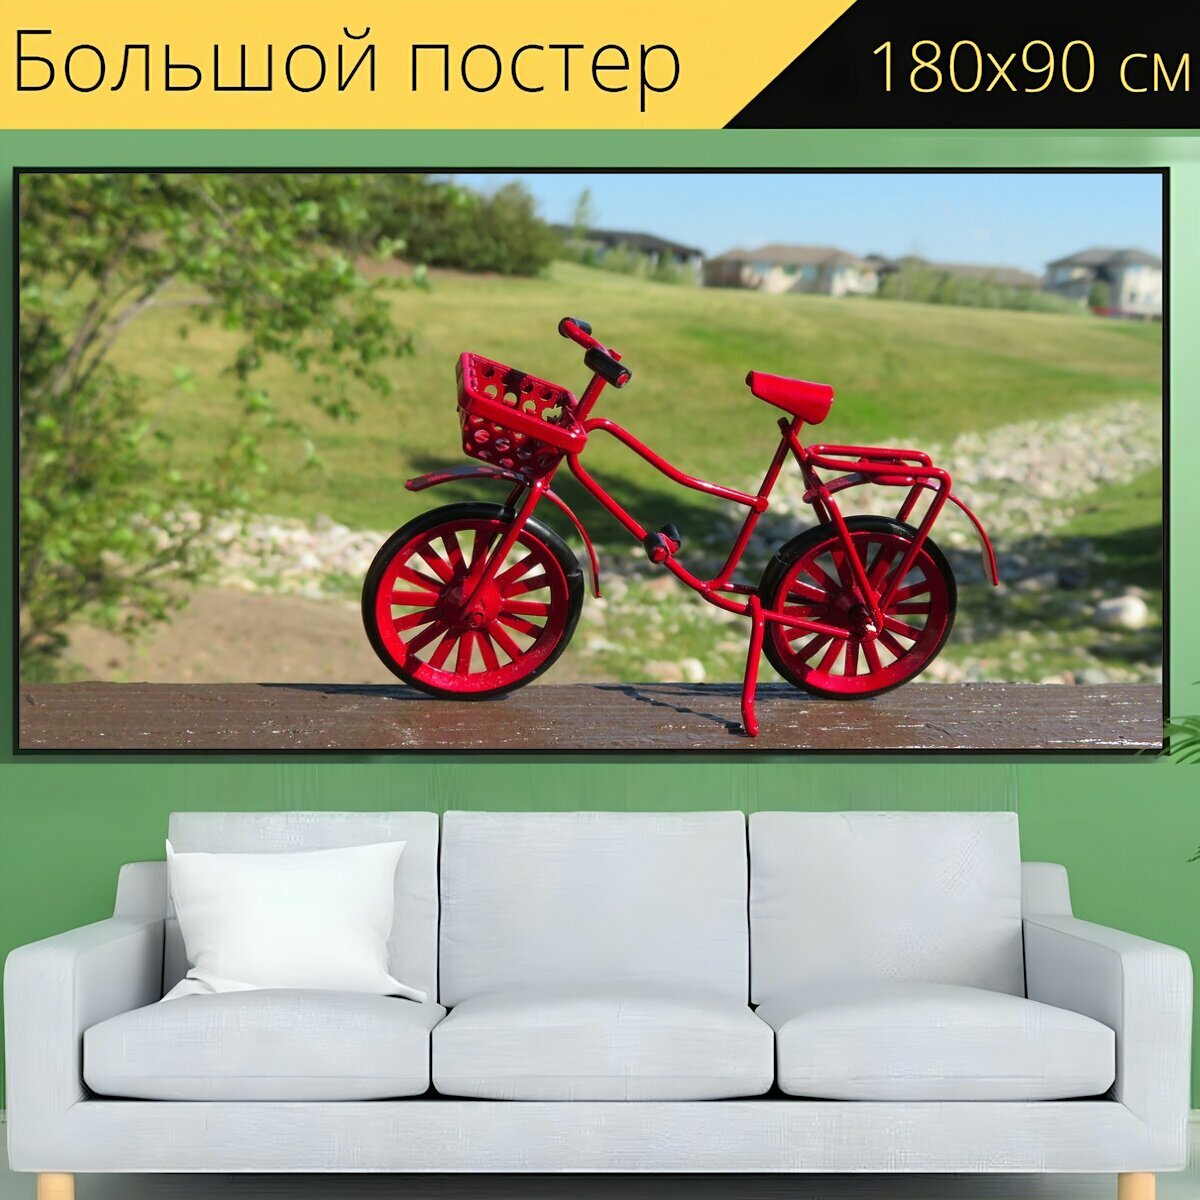 Большой постер "Велосипед, красный, езда на велосипеде" 180 x 90 см. для интерьера